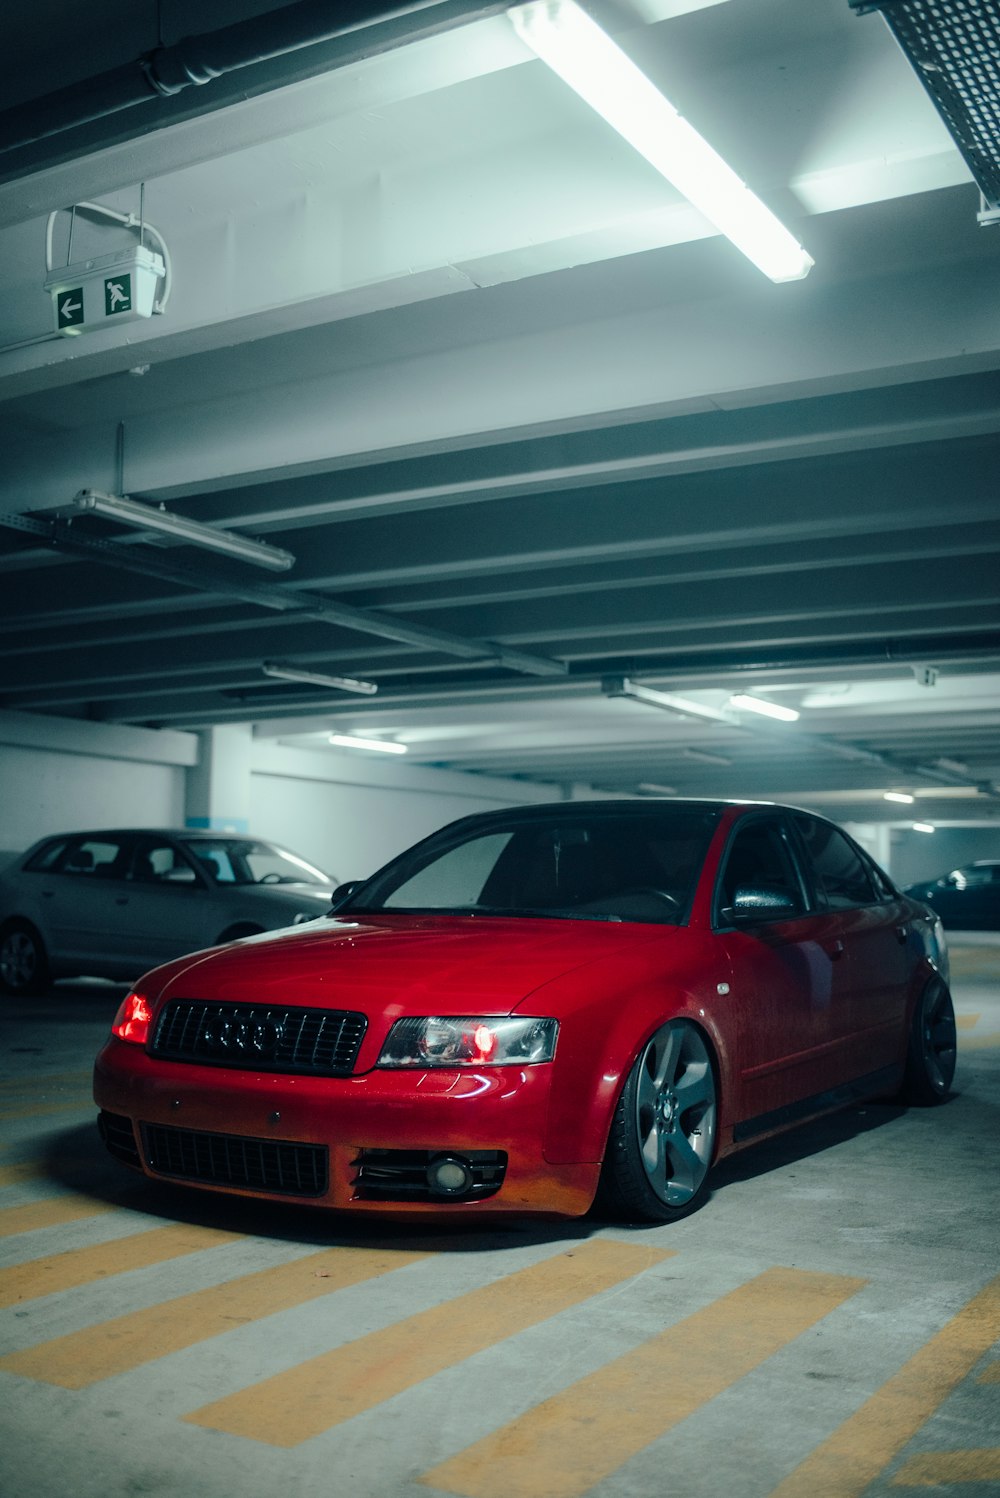 Un coche rojo aparcado en un aparcamiento